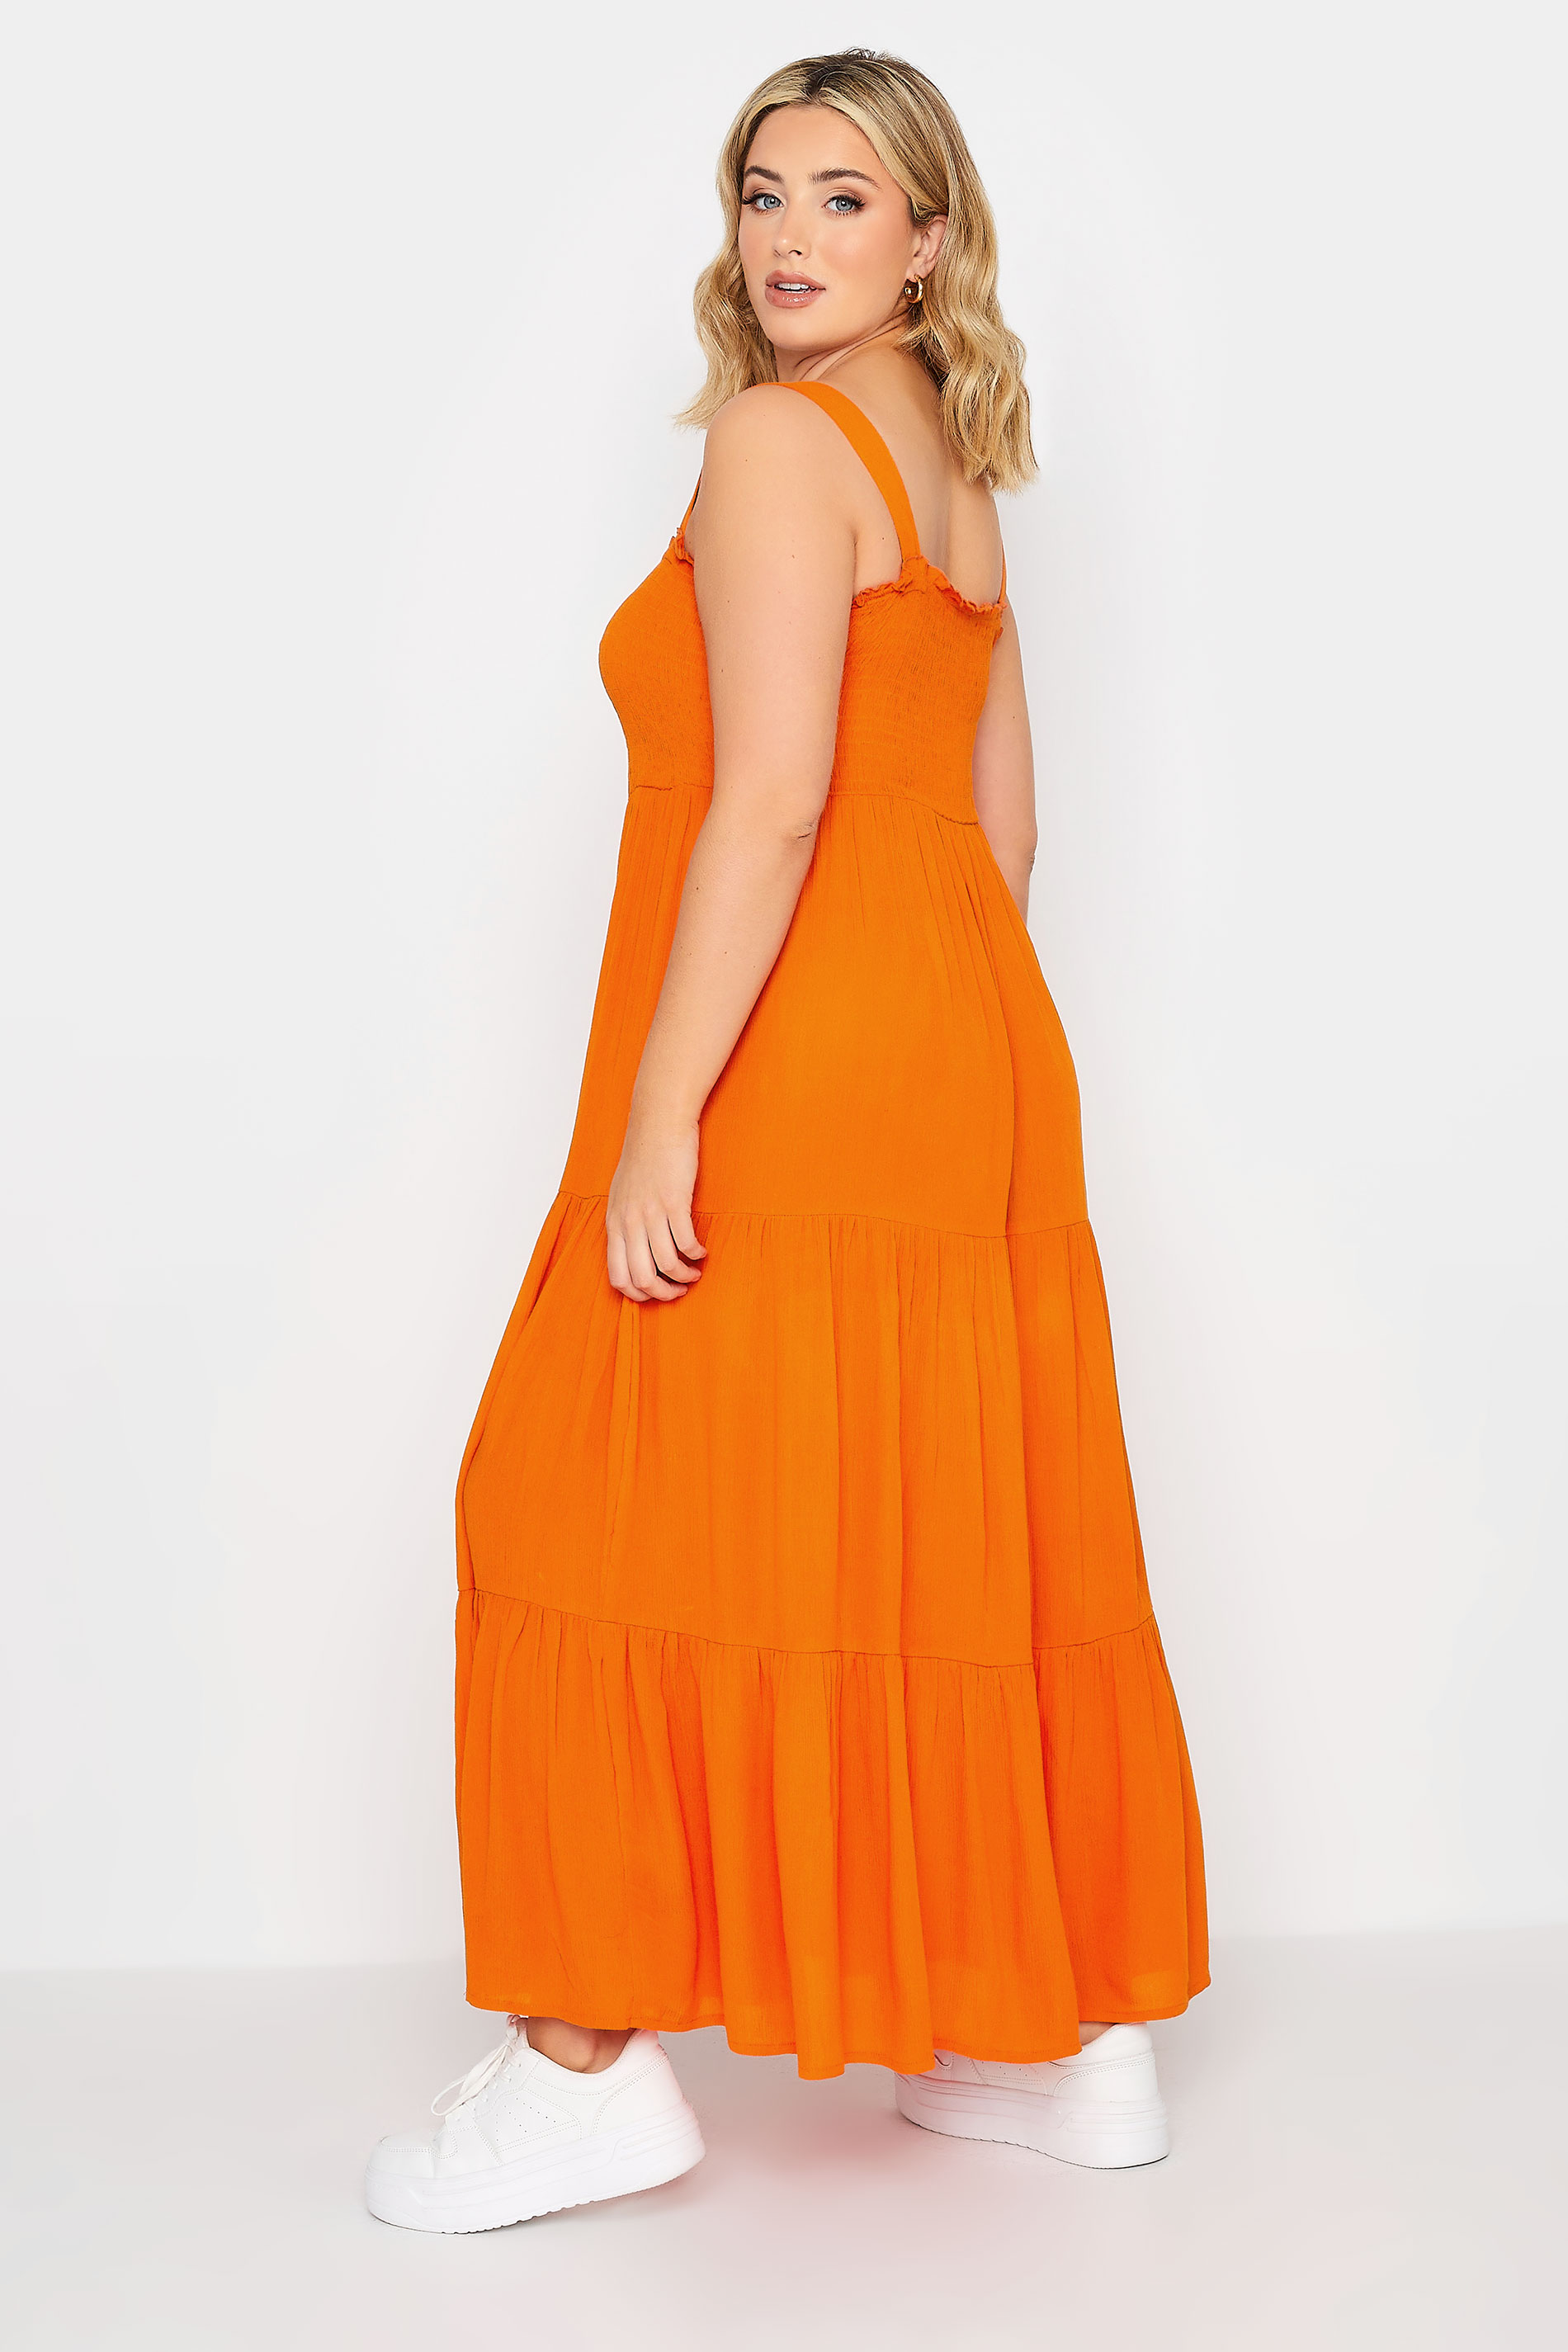 YOURS Plus Size Orange Shirred Strappy Sundress | Yours Clothing